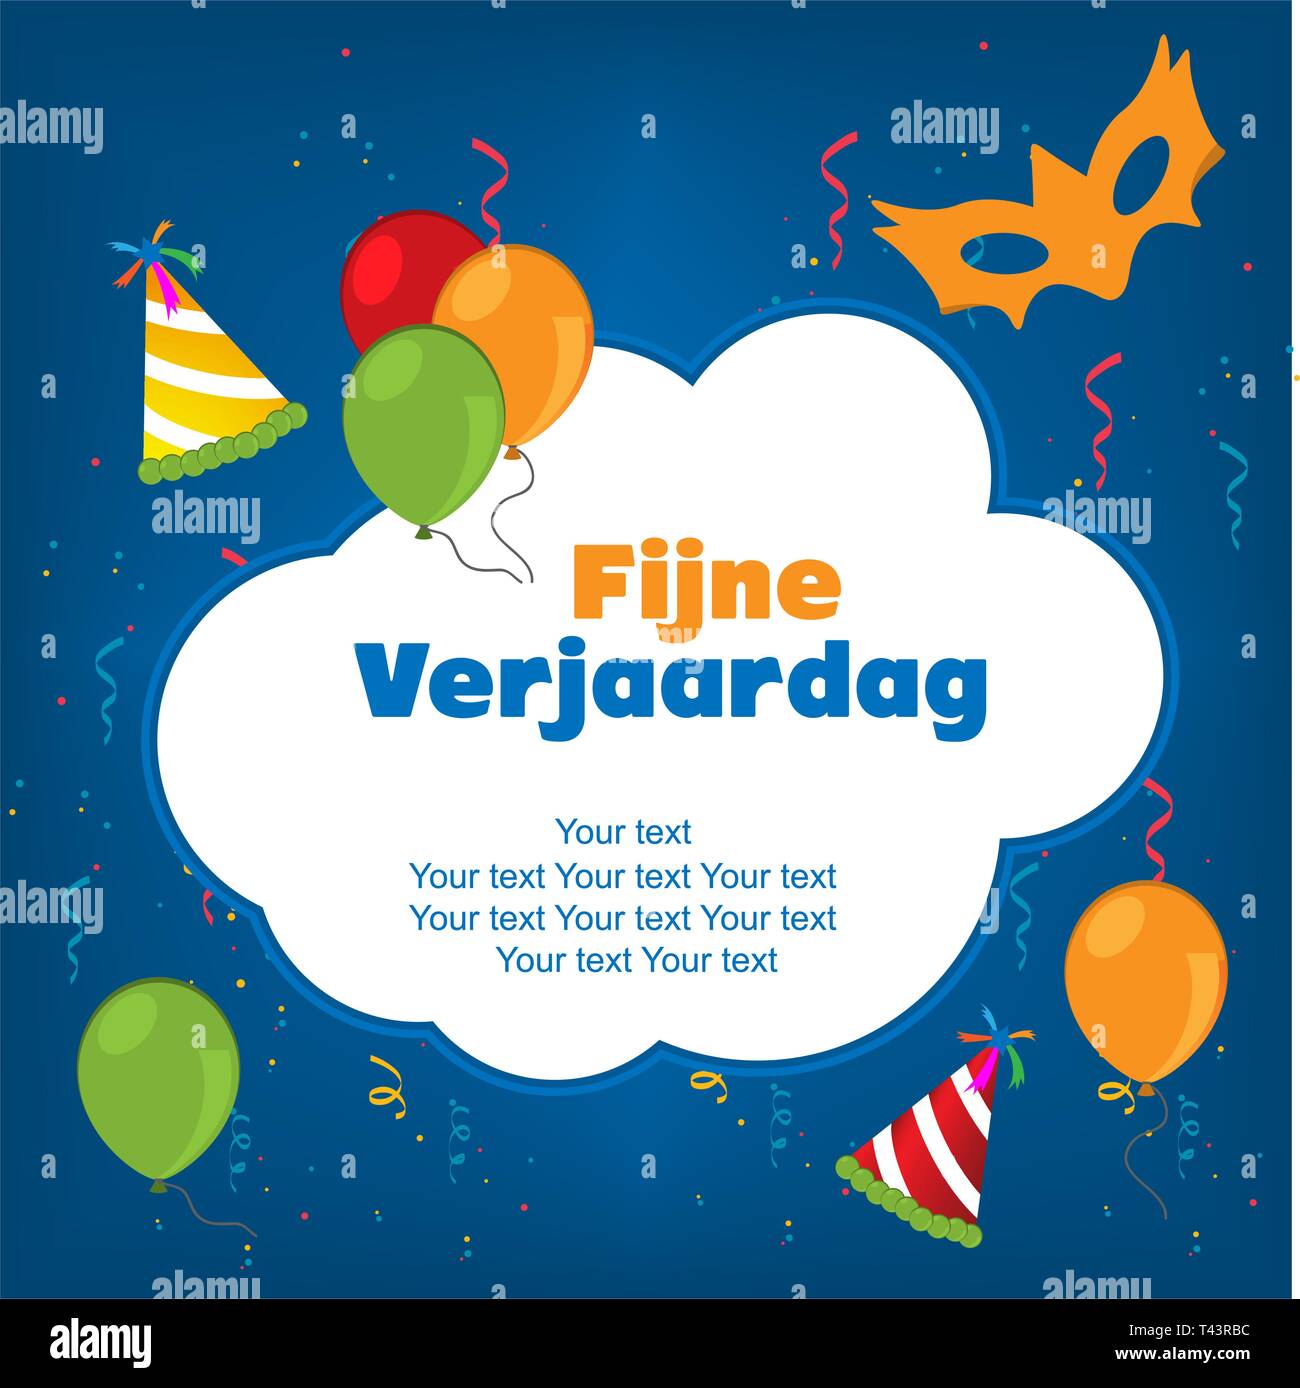 Happy Birthday in Dutch. fijne verjaardag Vector Image & Art - Alamy